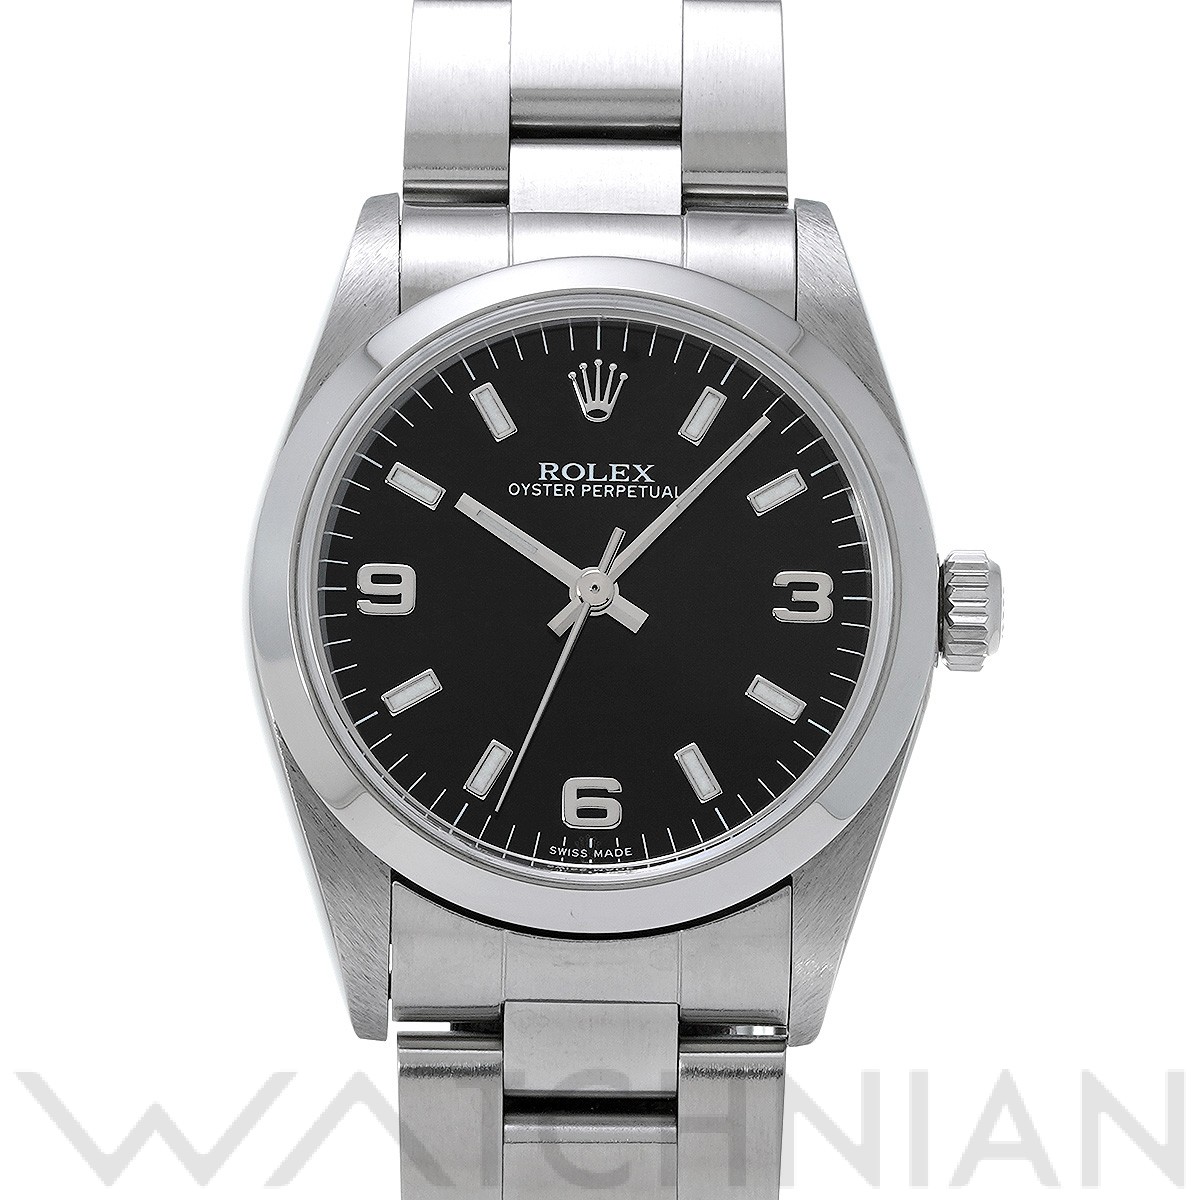 ロレックス ROLEX 77080 A番(1999年頃製造) ブラック ユニセックス 腕時計